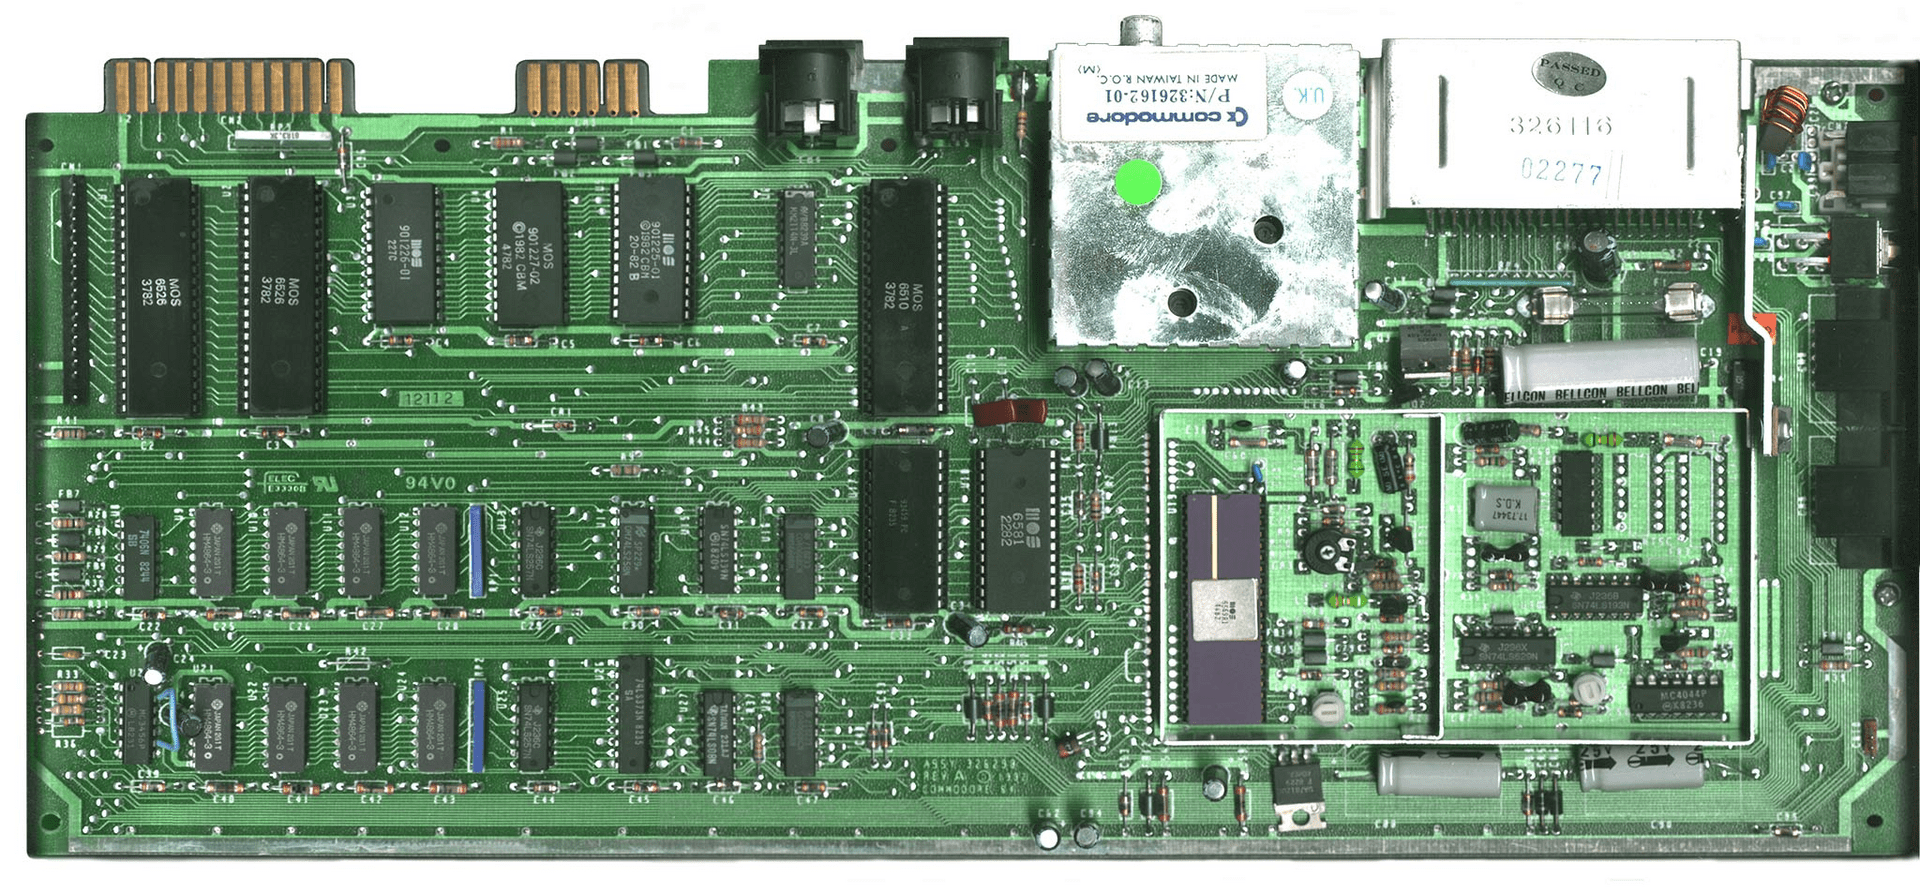 Hauptplatine der PAL-Version mit MOS 6510